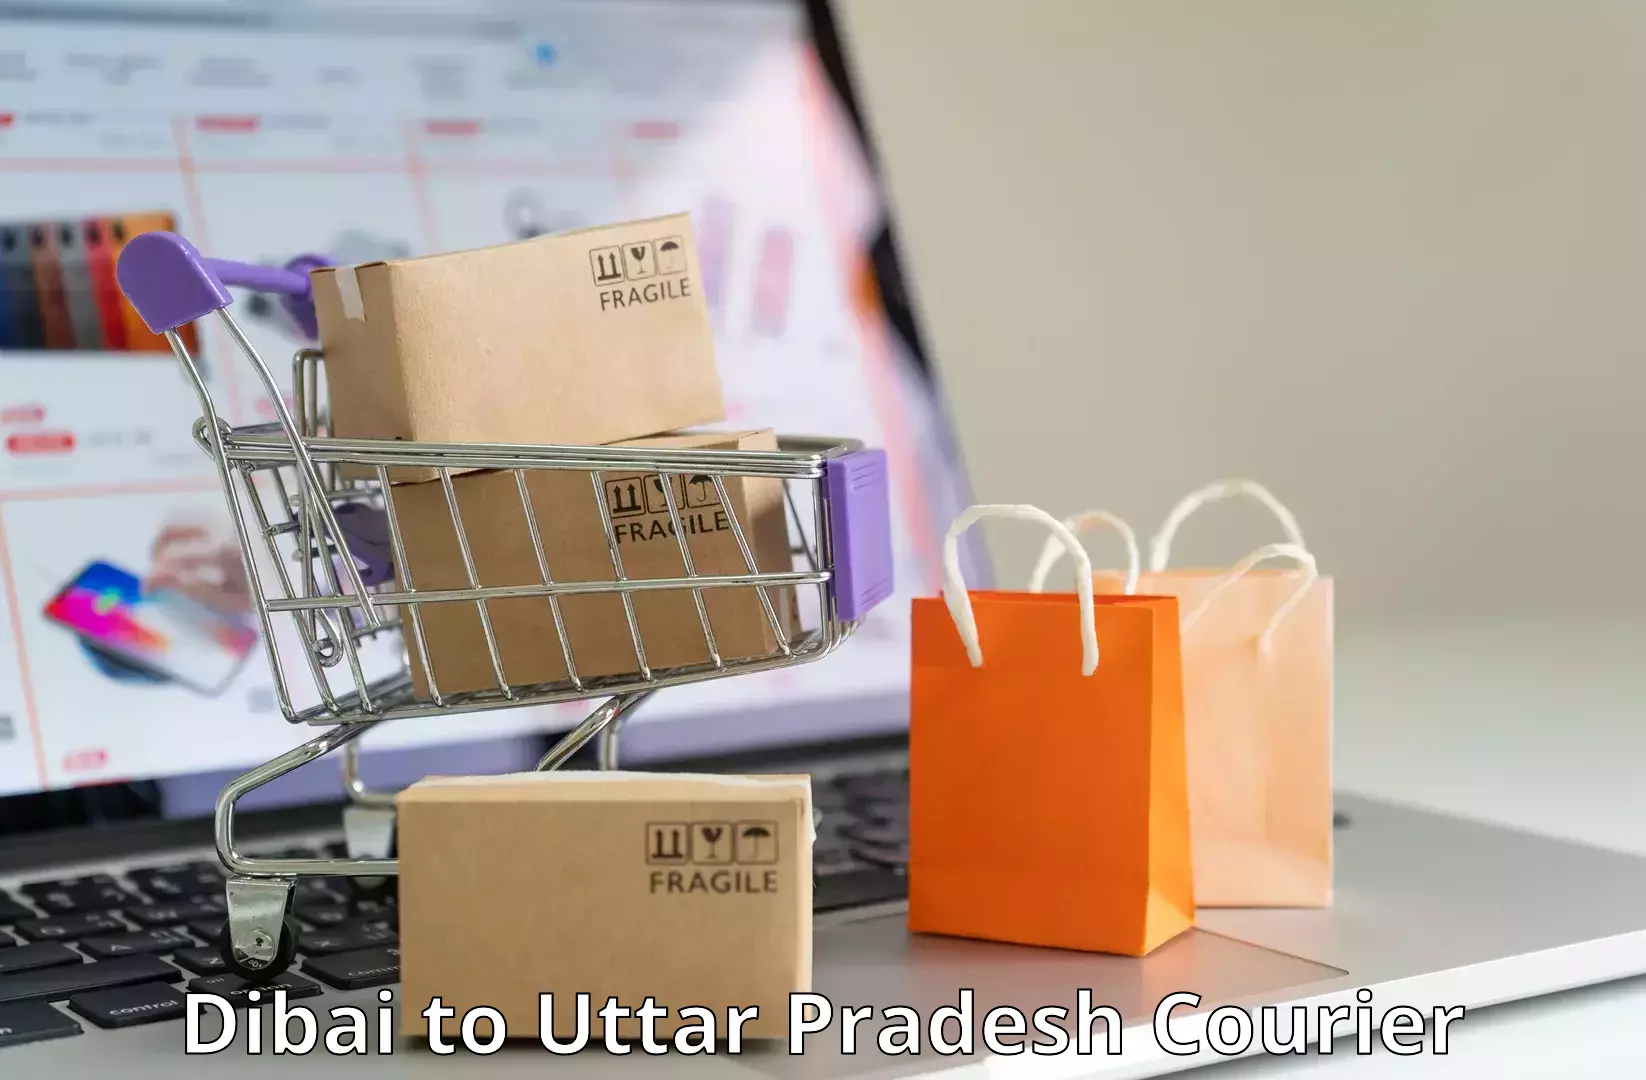 Easy access courier services Dibai to Uttar Pradesh